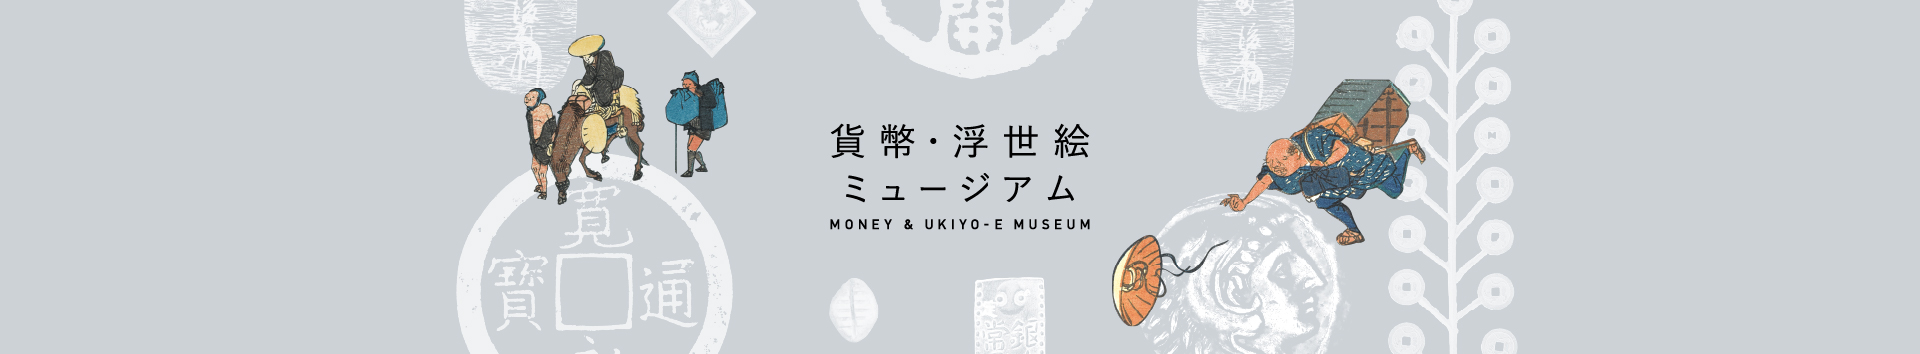 貨幣・浮世絵ミュージアム